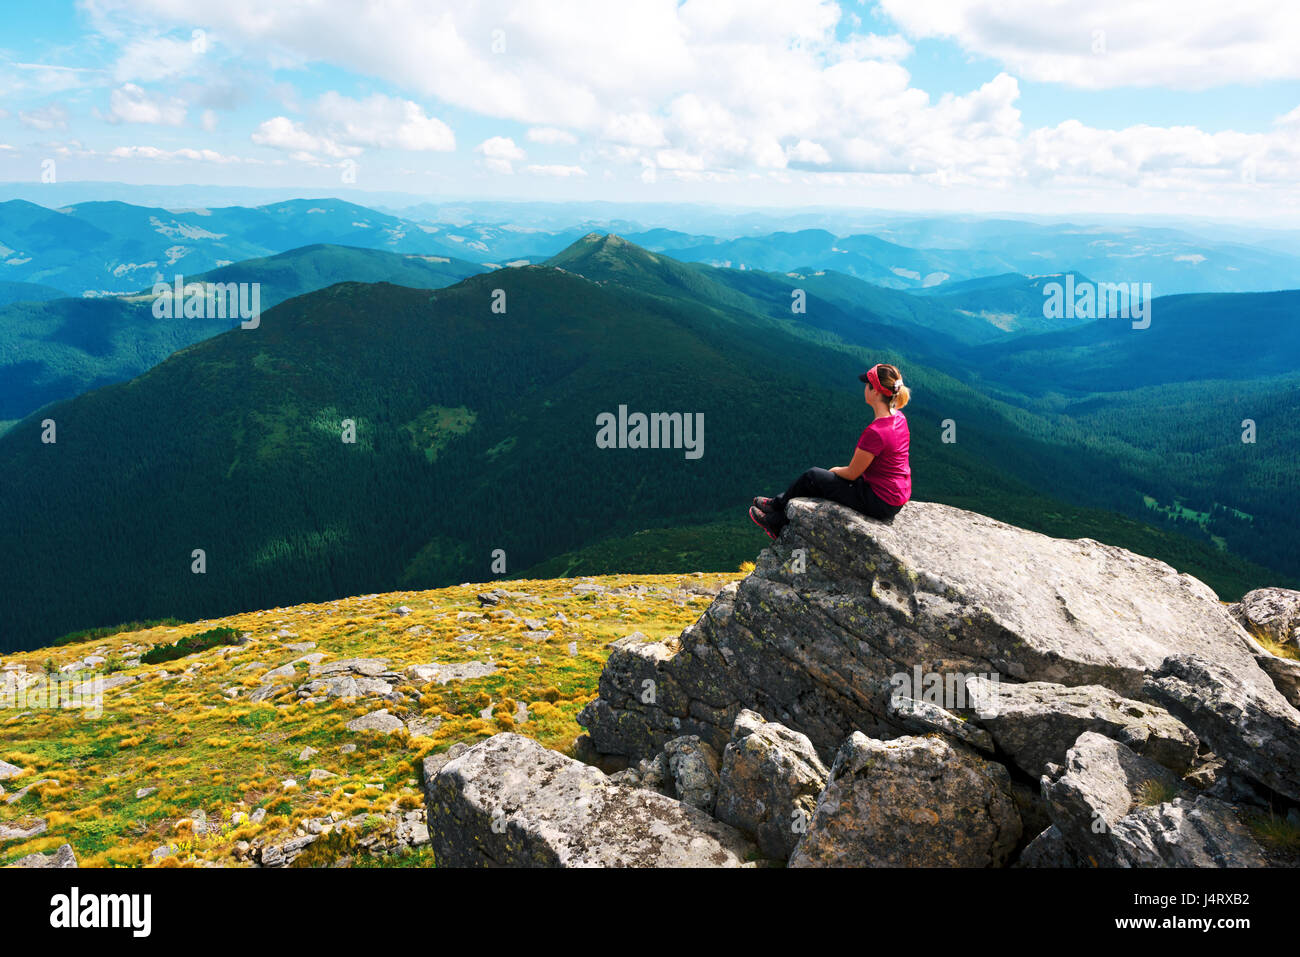 Ein einsamer Tourist sitzt auf dem Rand der Klippe vor dem Hintergrund einer unglaublichen Berglandschaft. Sonnenschein und blauer Himmel Stockfoto